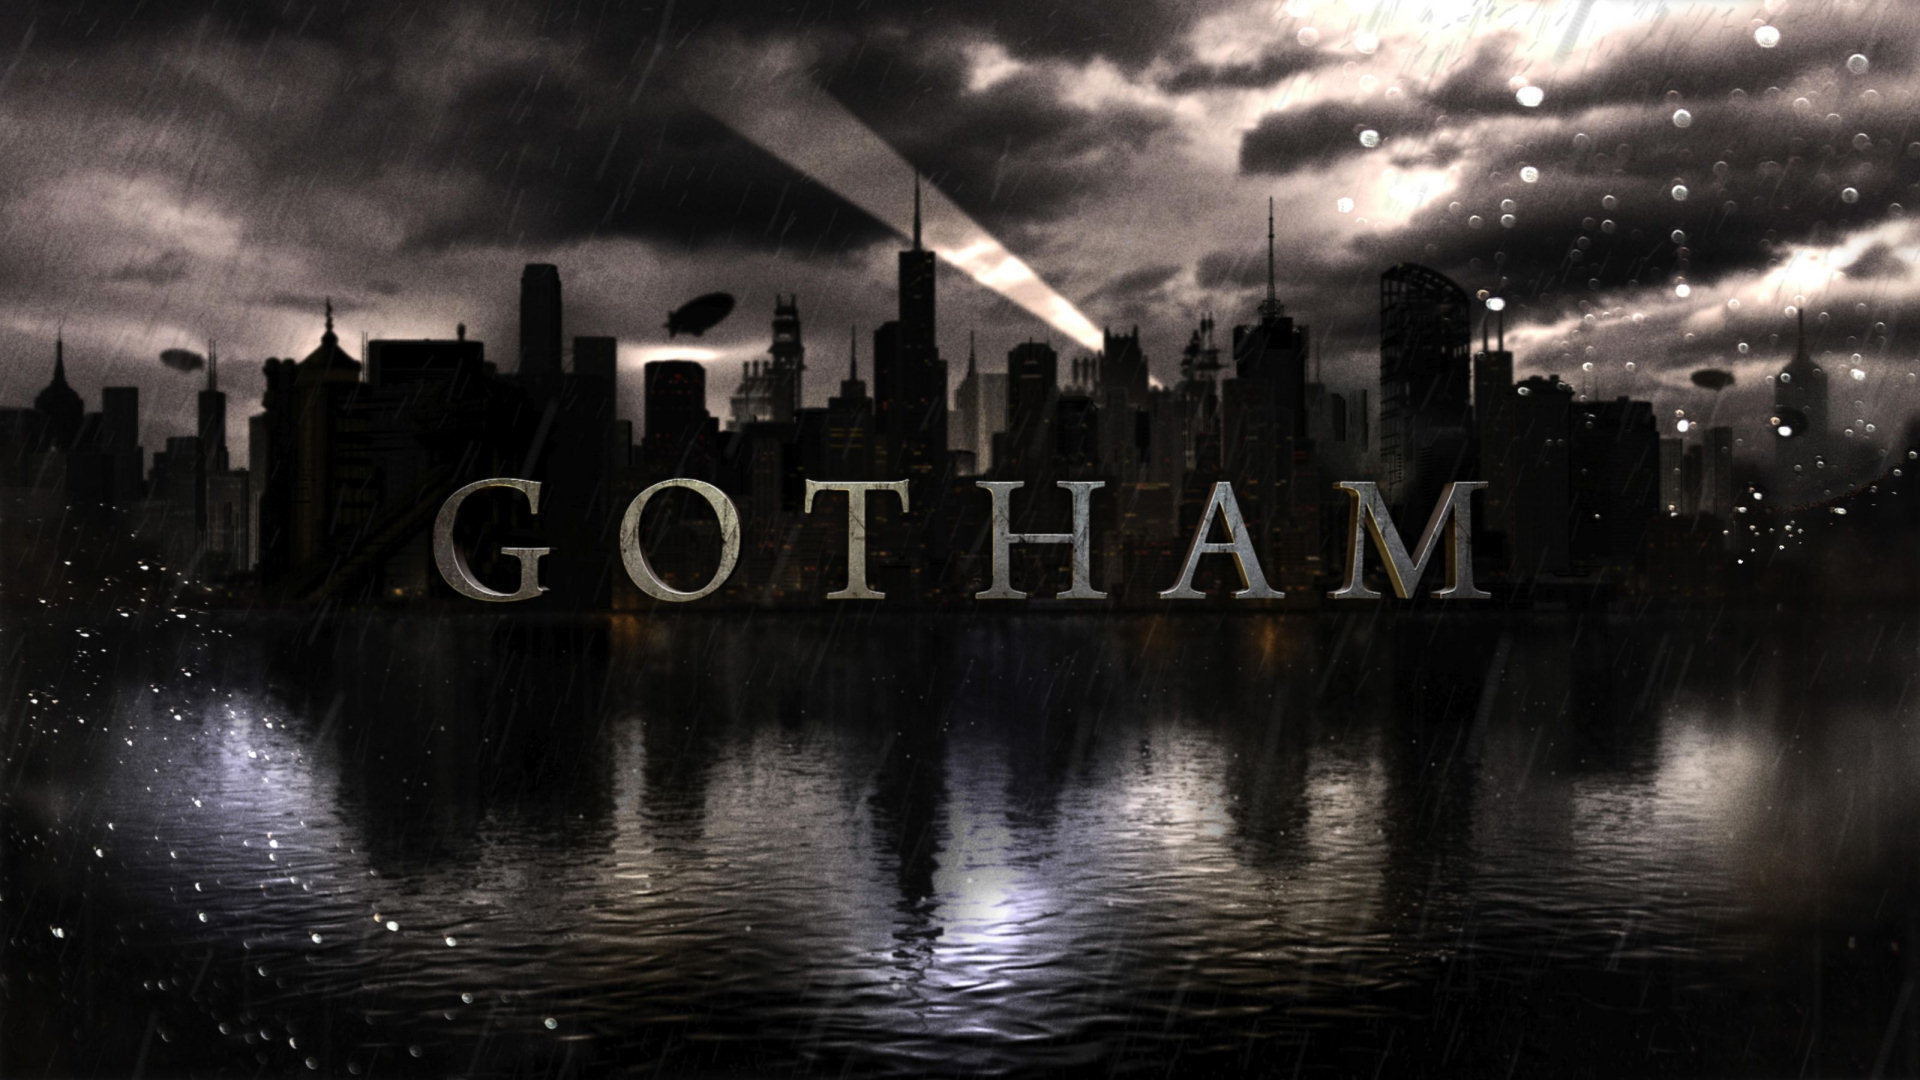 Télécharger des fonds d'écran Gotham HD